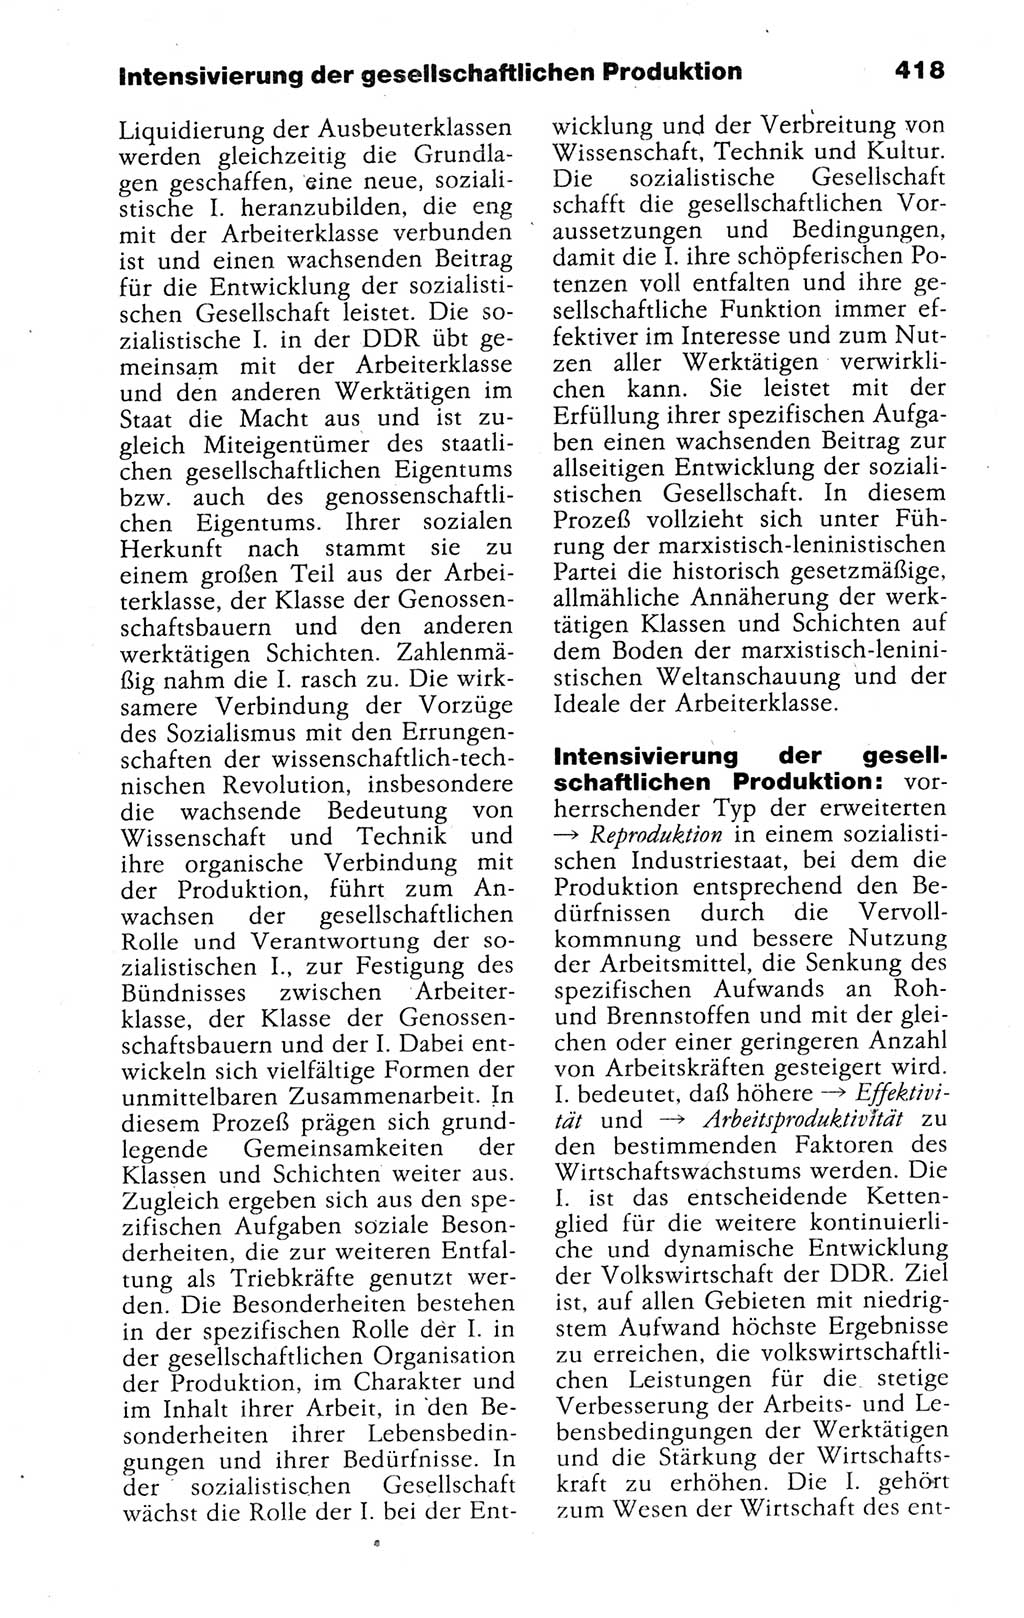 Kleines politisches Wörterbuch [Deutsche Demokratische Republik (DDR)] 1988, Seite 418 (Kl. pol. Wb. DDR 1988, S. 418)